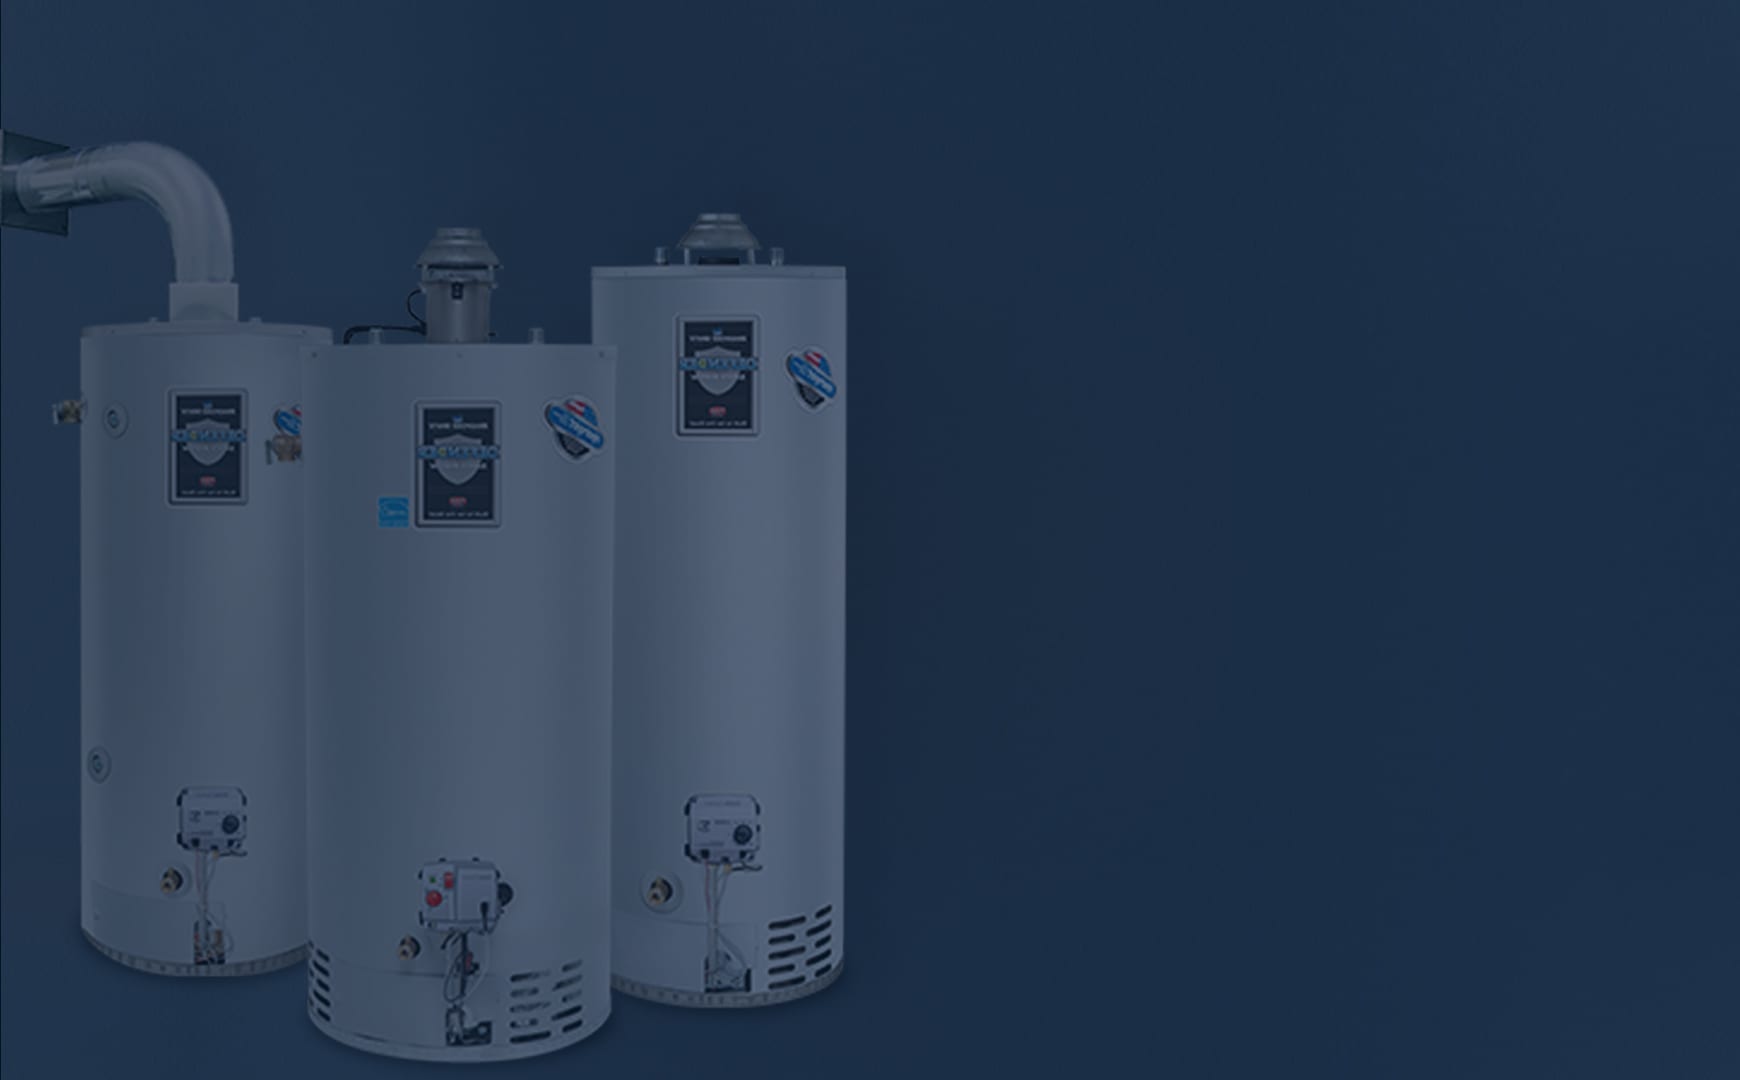 https://hedlundplumbing.com/wp-content/uploads/2021/05/gas-water-heater-header-blue-overlay.jpg